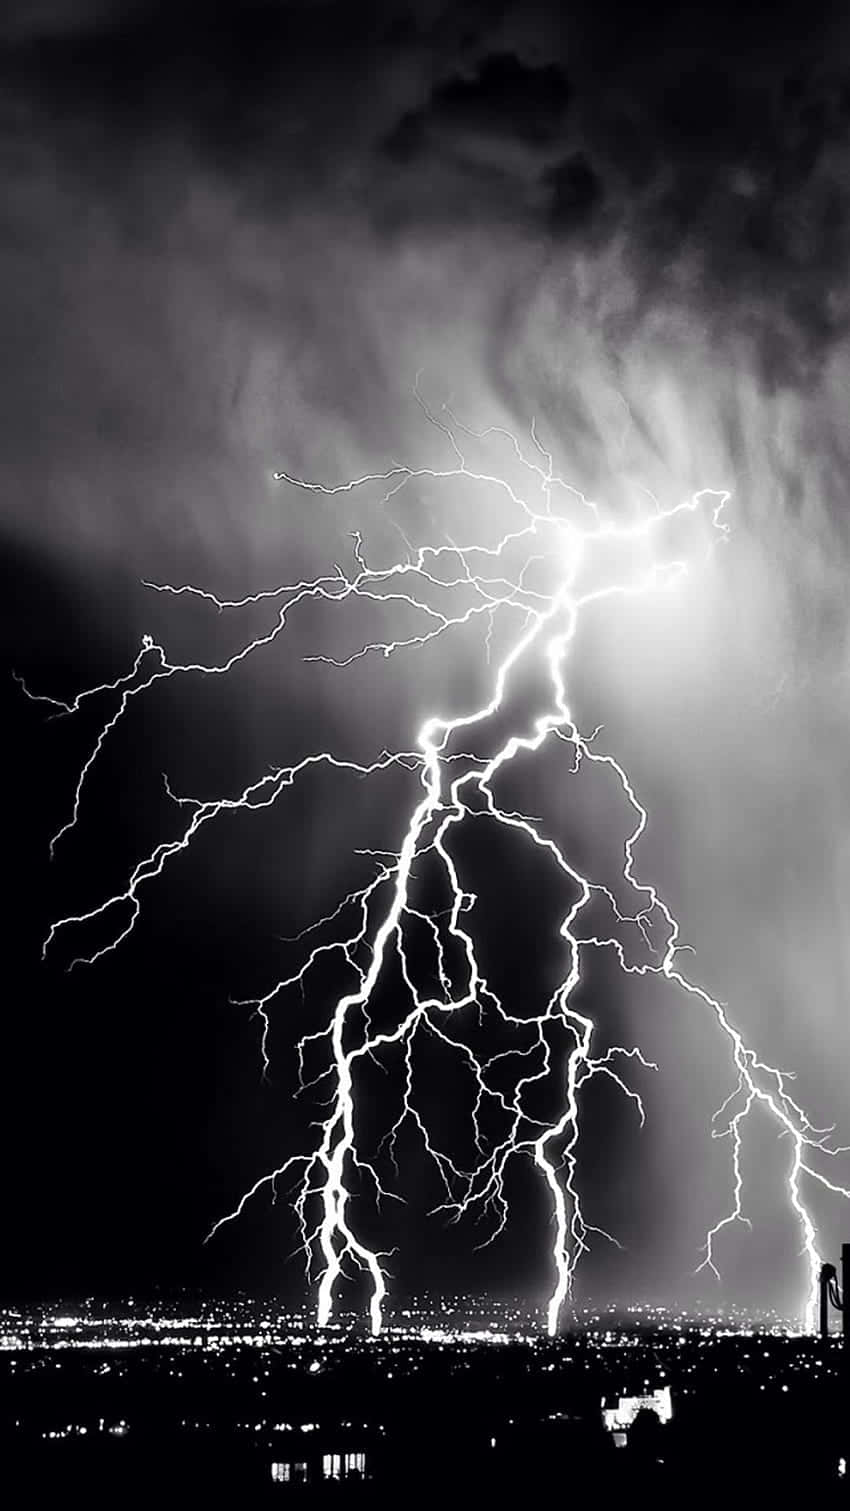 Intense Lightning Over City Night Sky Wallpaper